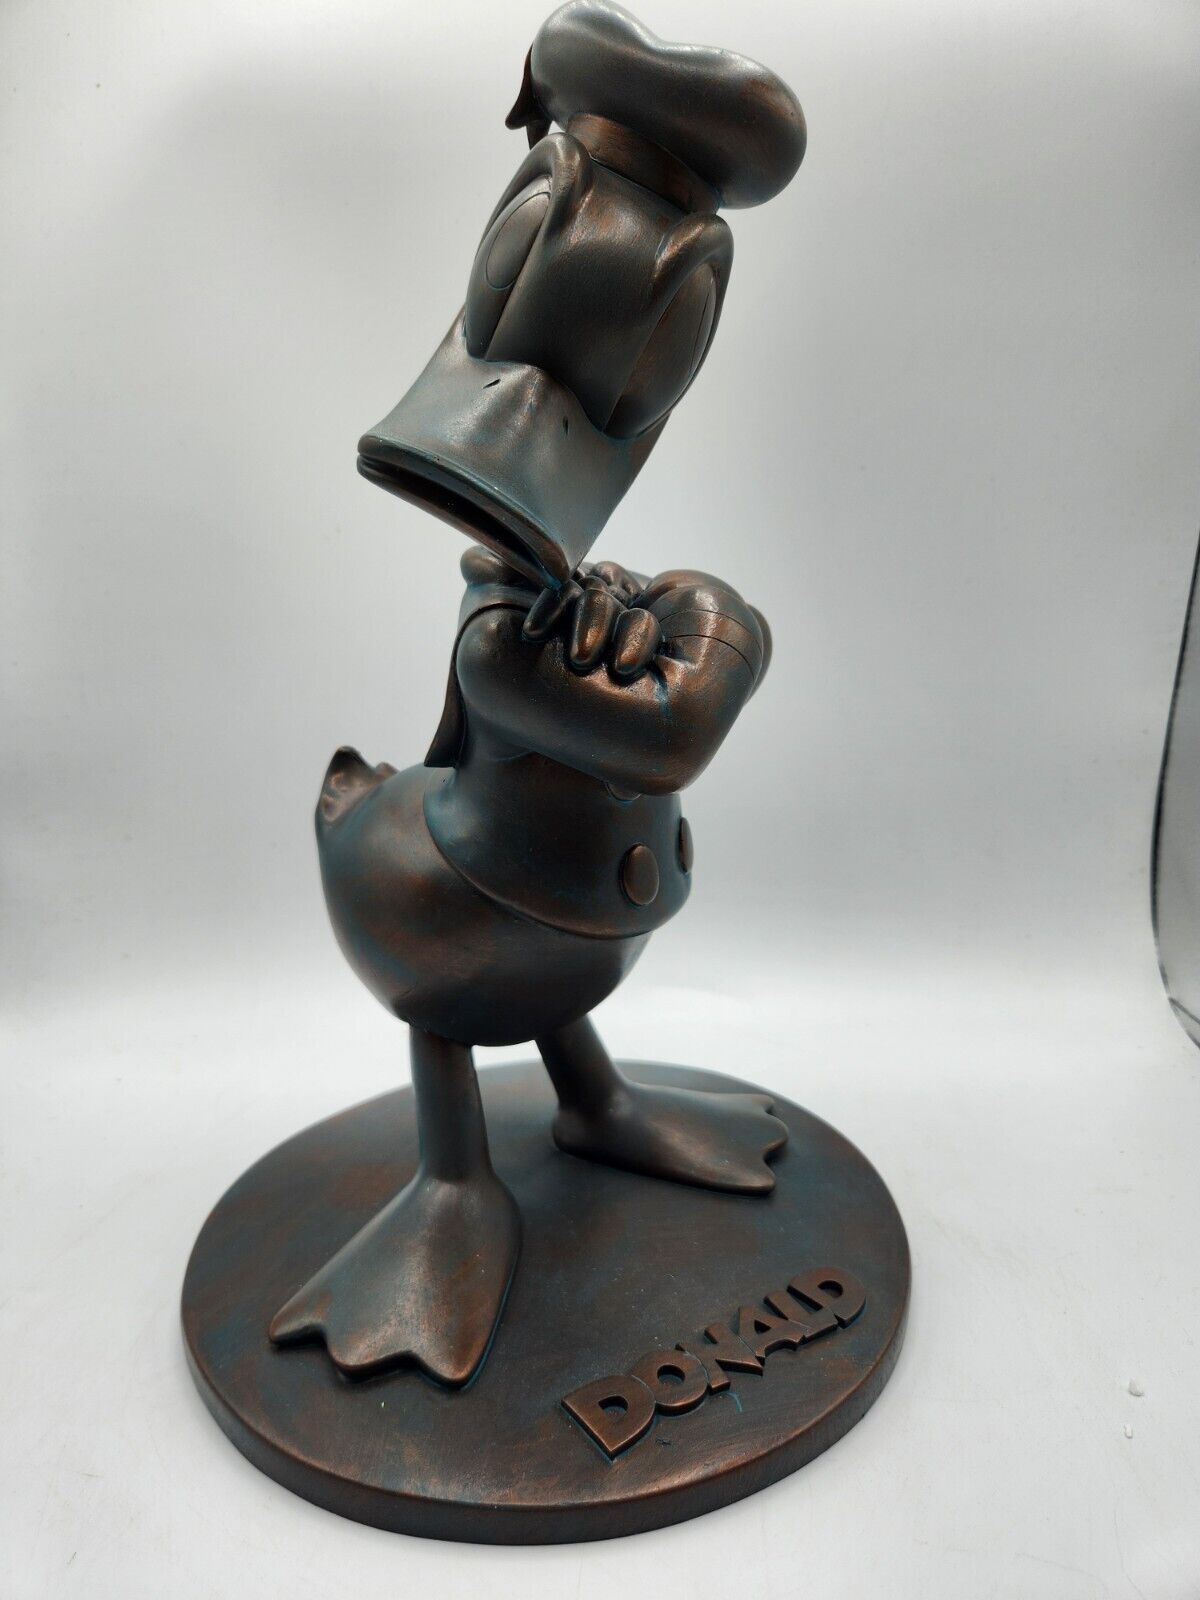 Rare Disney Parks Epcot 2012 Festival FG12 Donald Garden Resin Figurine - New